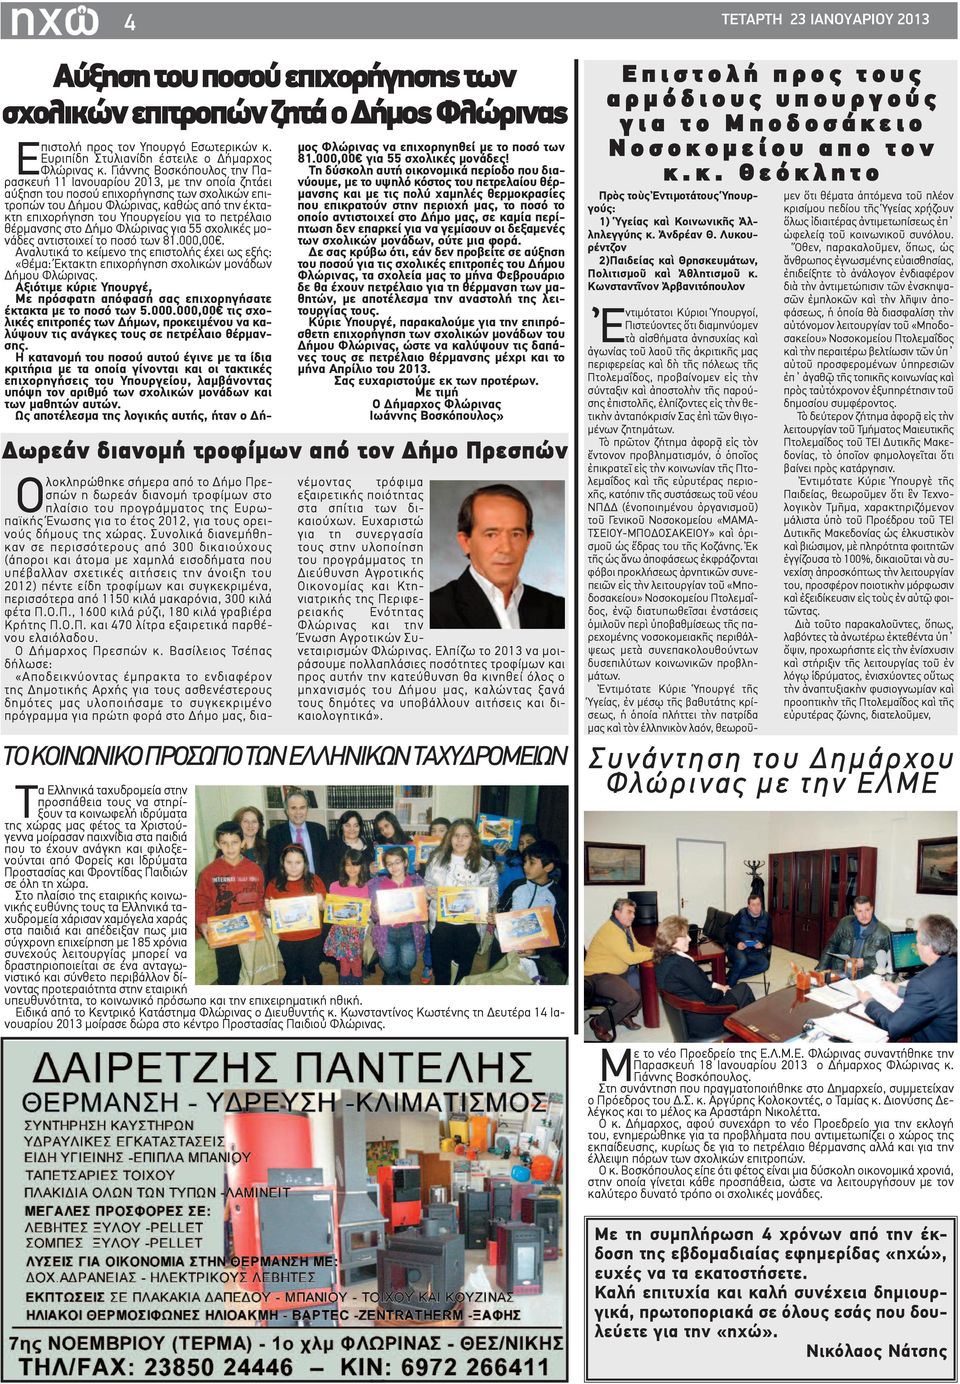 Γιάννης Βοσκόπουλος την Παρασκευή 11 Ιανουαρίου 2013, με την οποία ζητάει αύξηση του ποσού επιχορήγησης των σχολικών επιτροπών του Δήμου Φλώρινας, καθώς από την έκτακτη επιχορήγηση του Υπουργείου για